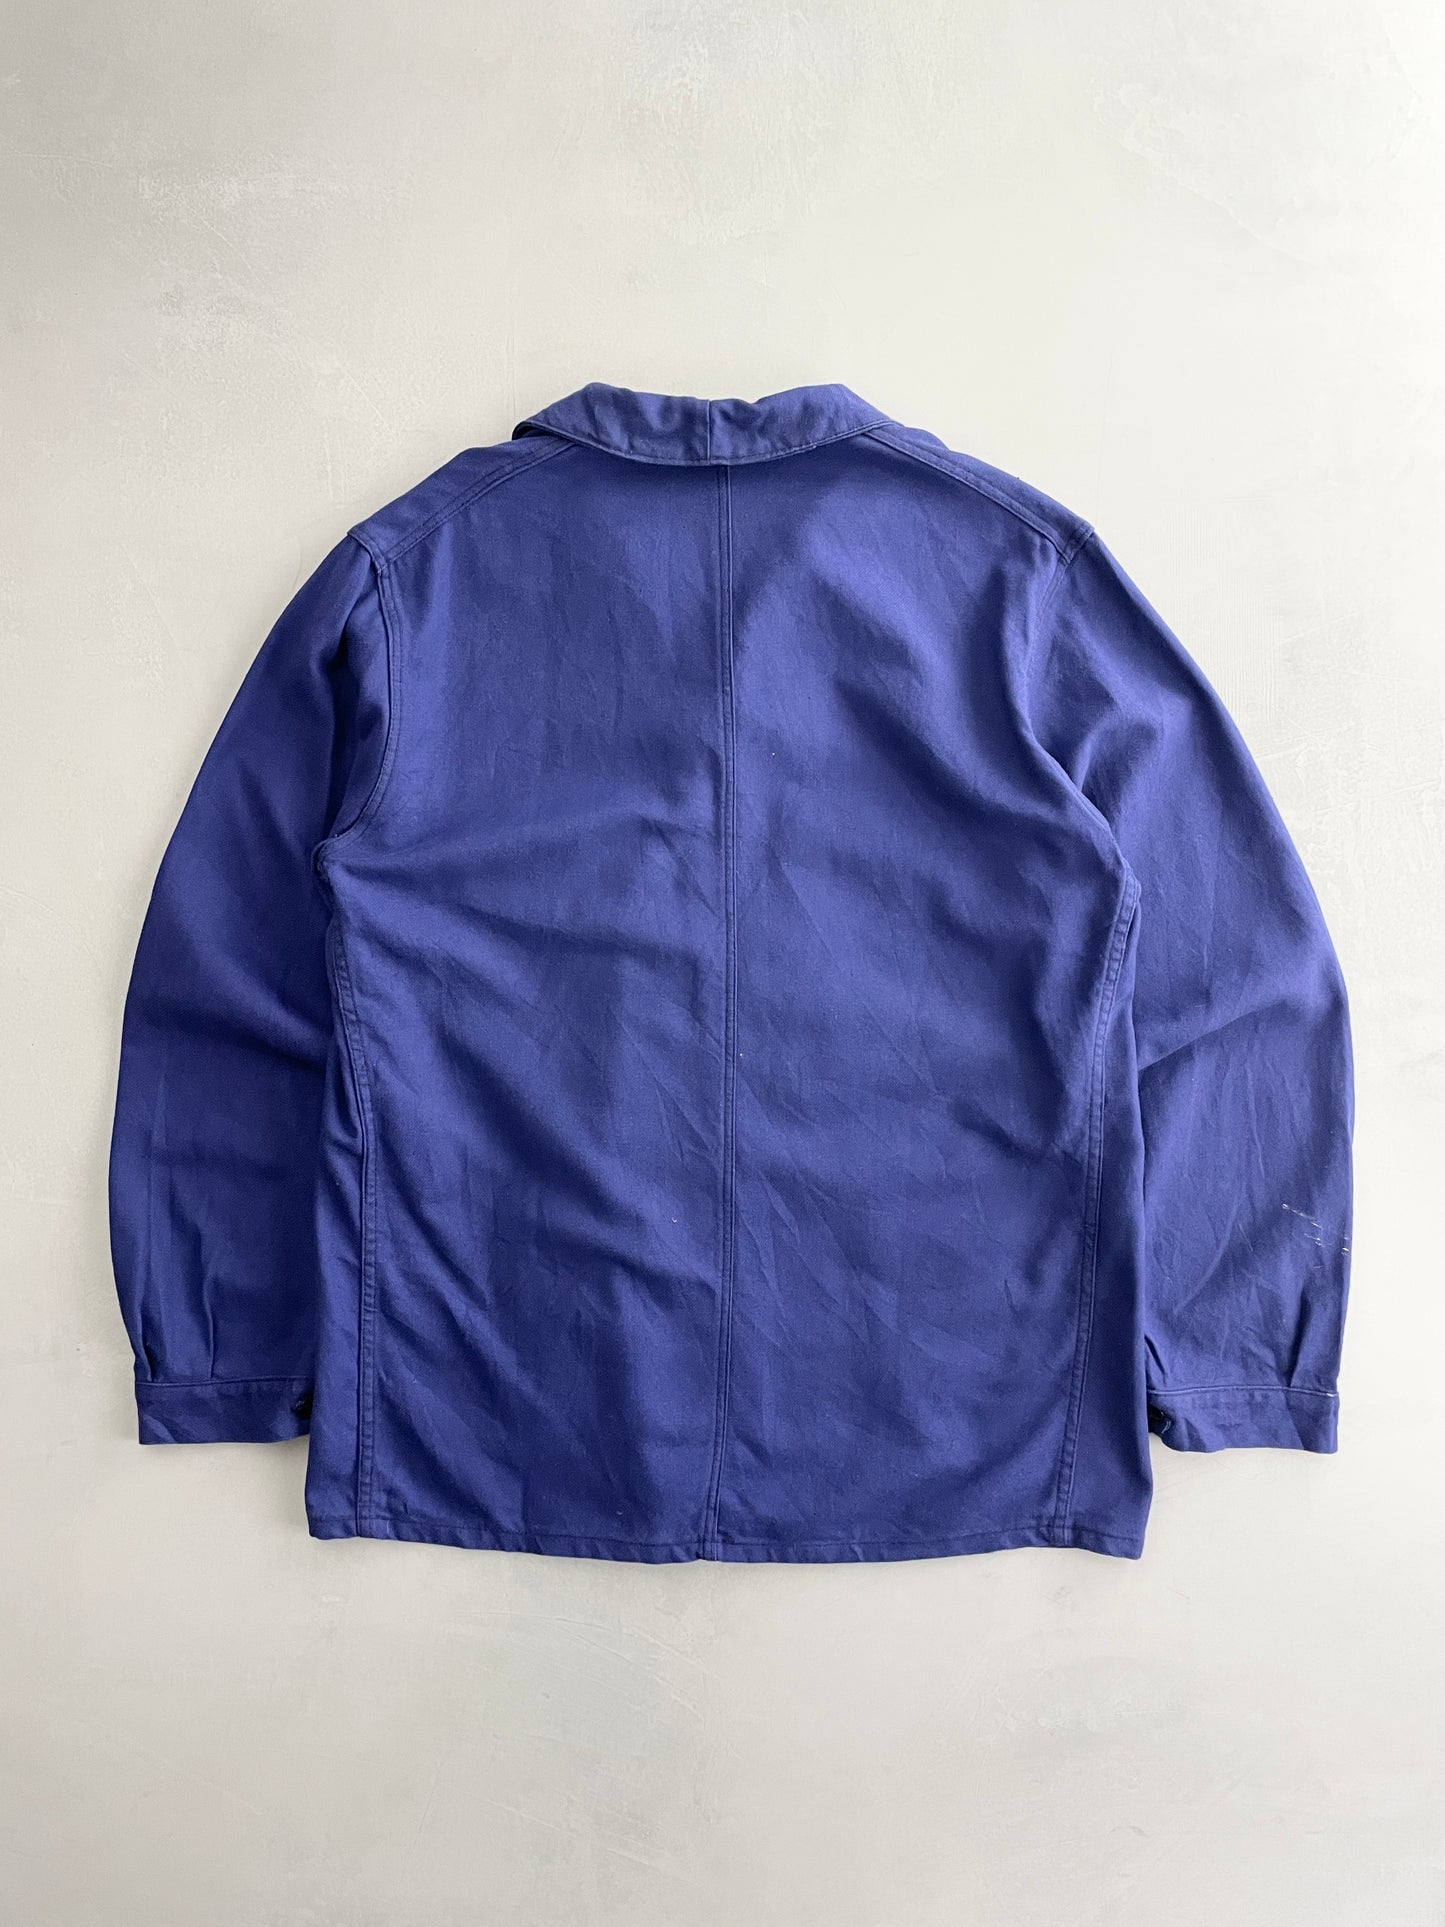 French Chore Jacket [XL]